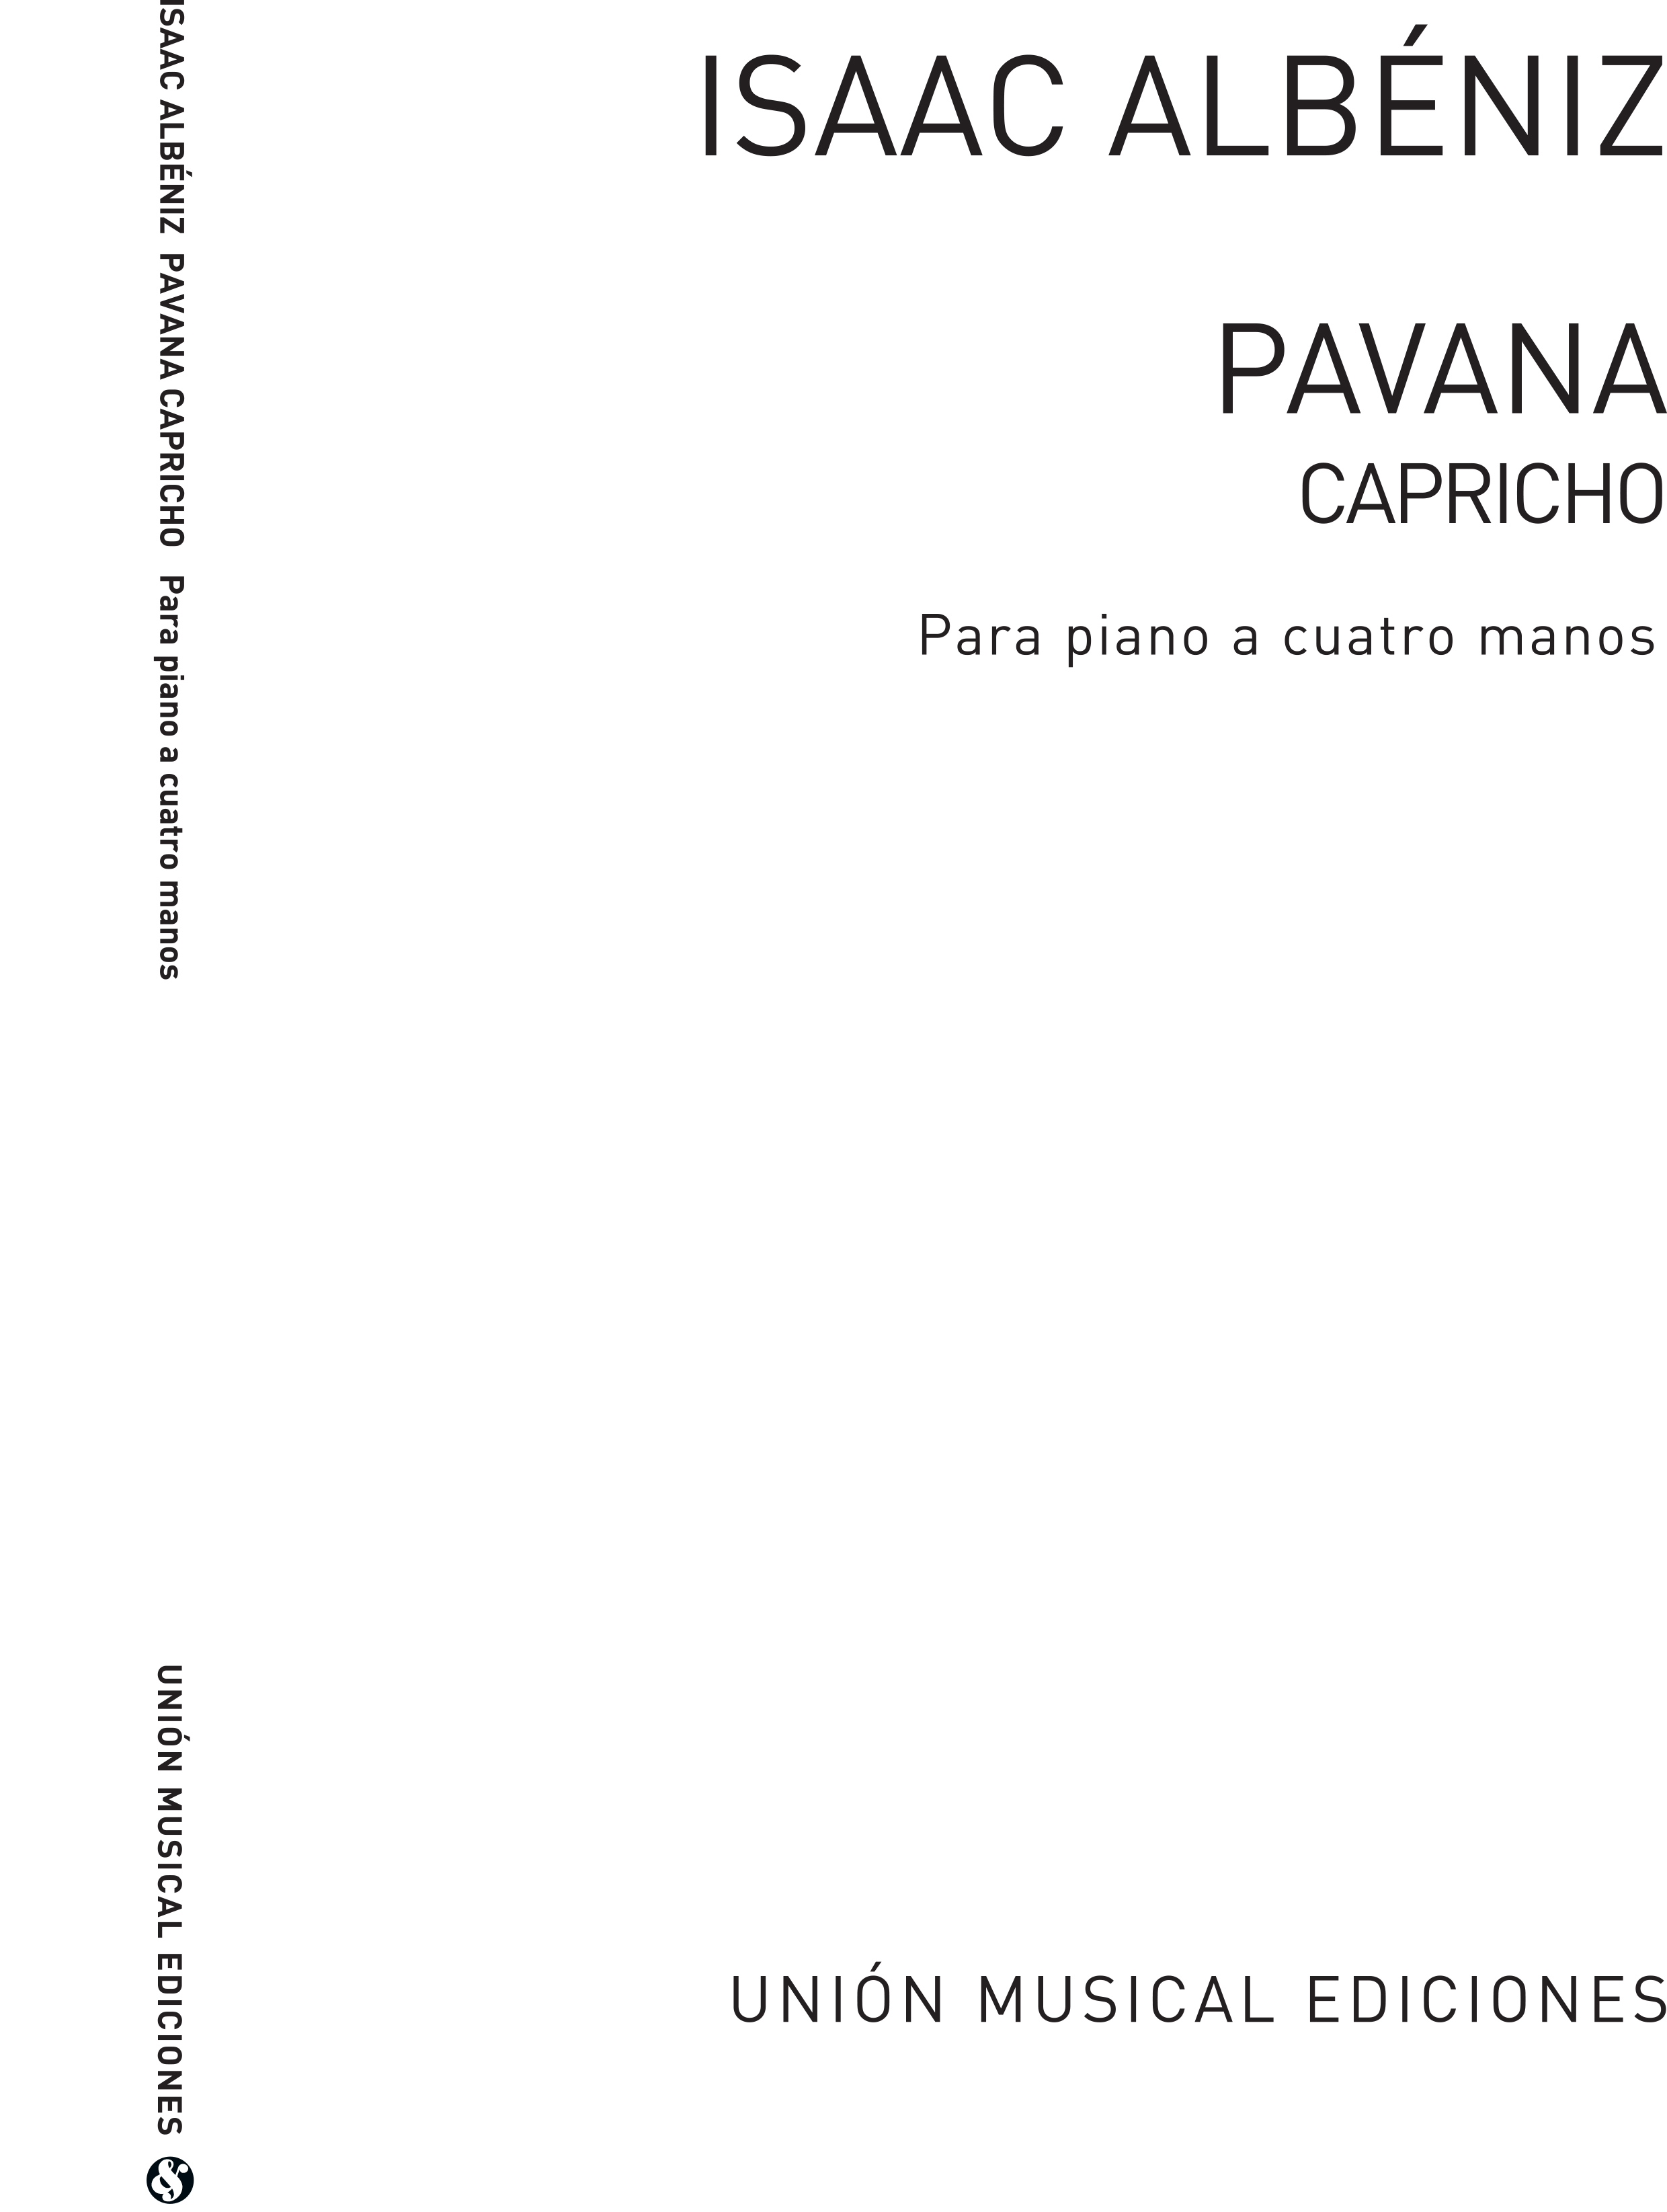 Isaac Albeniz: Pavana Capricho Piano for 4 Hands